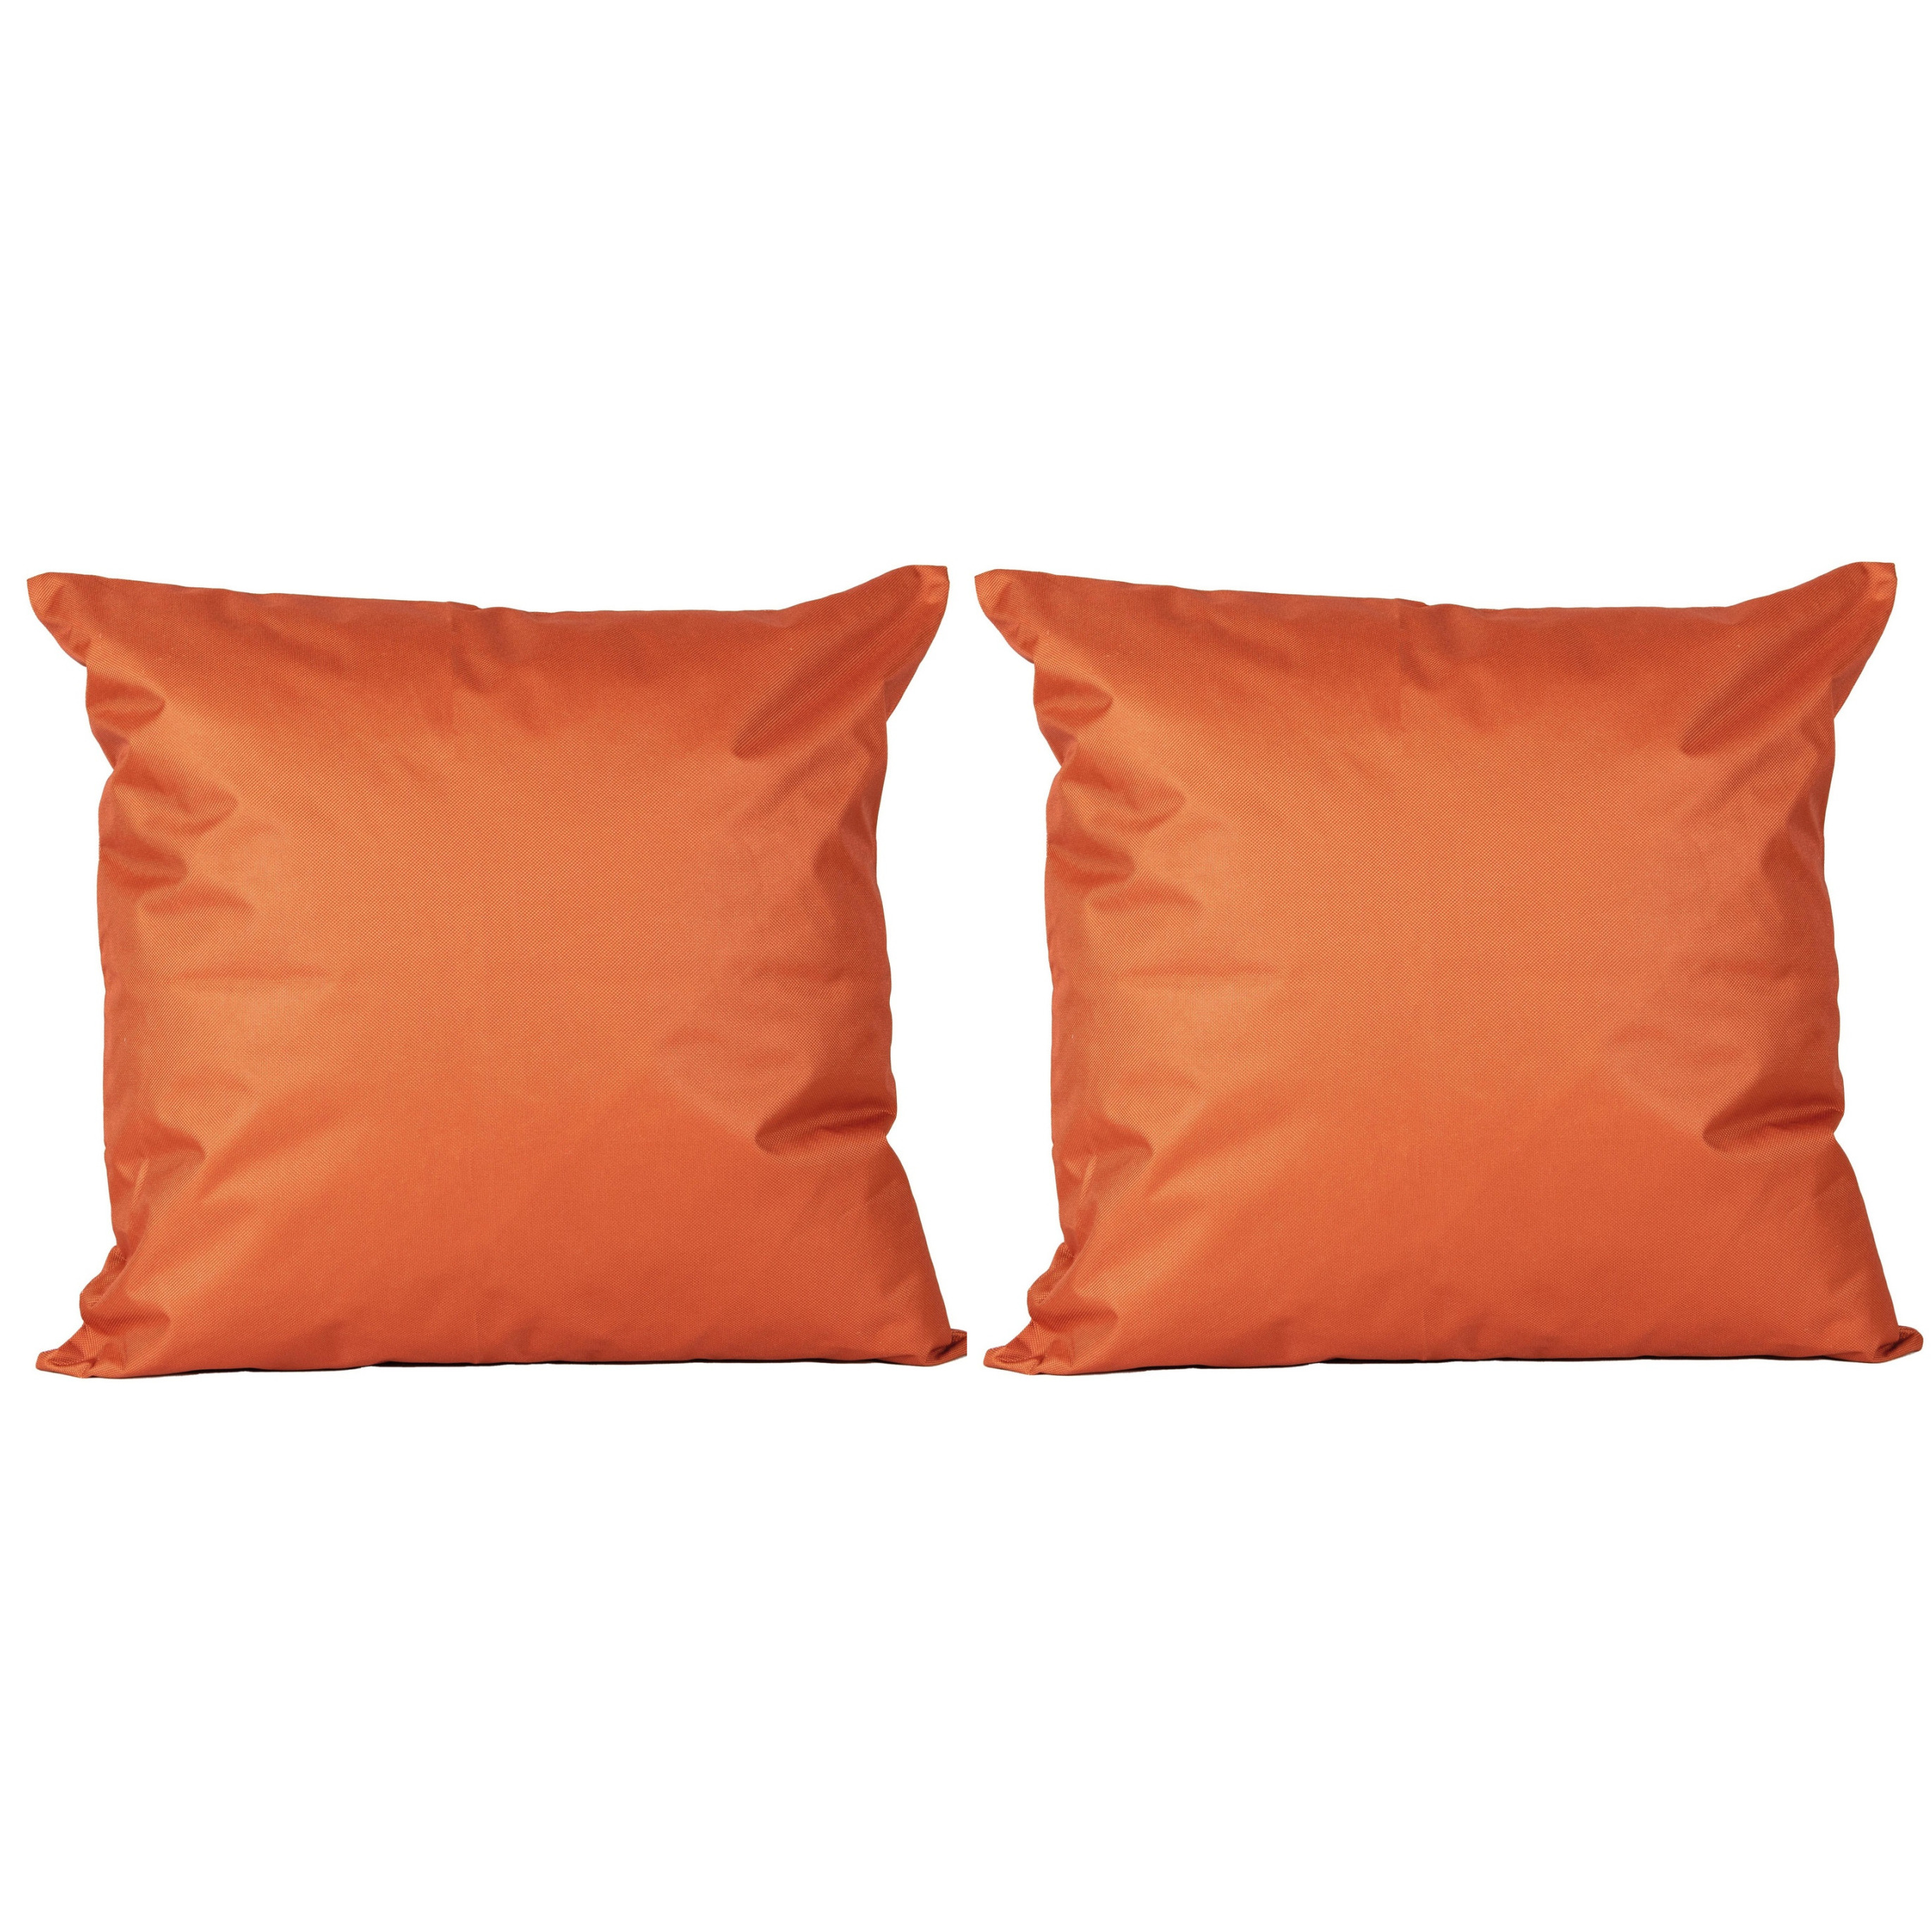 8x Bank-sier kussens voor binnen en buiten in de kleur oranje 45 x 45 cm